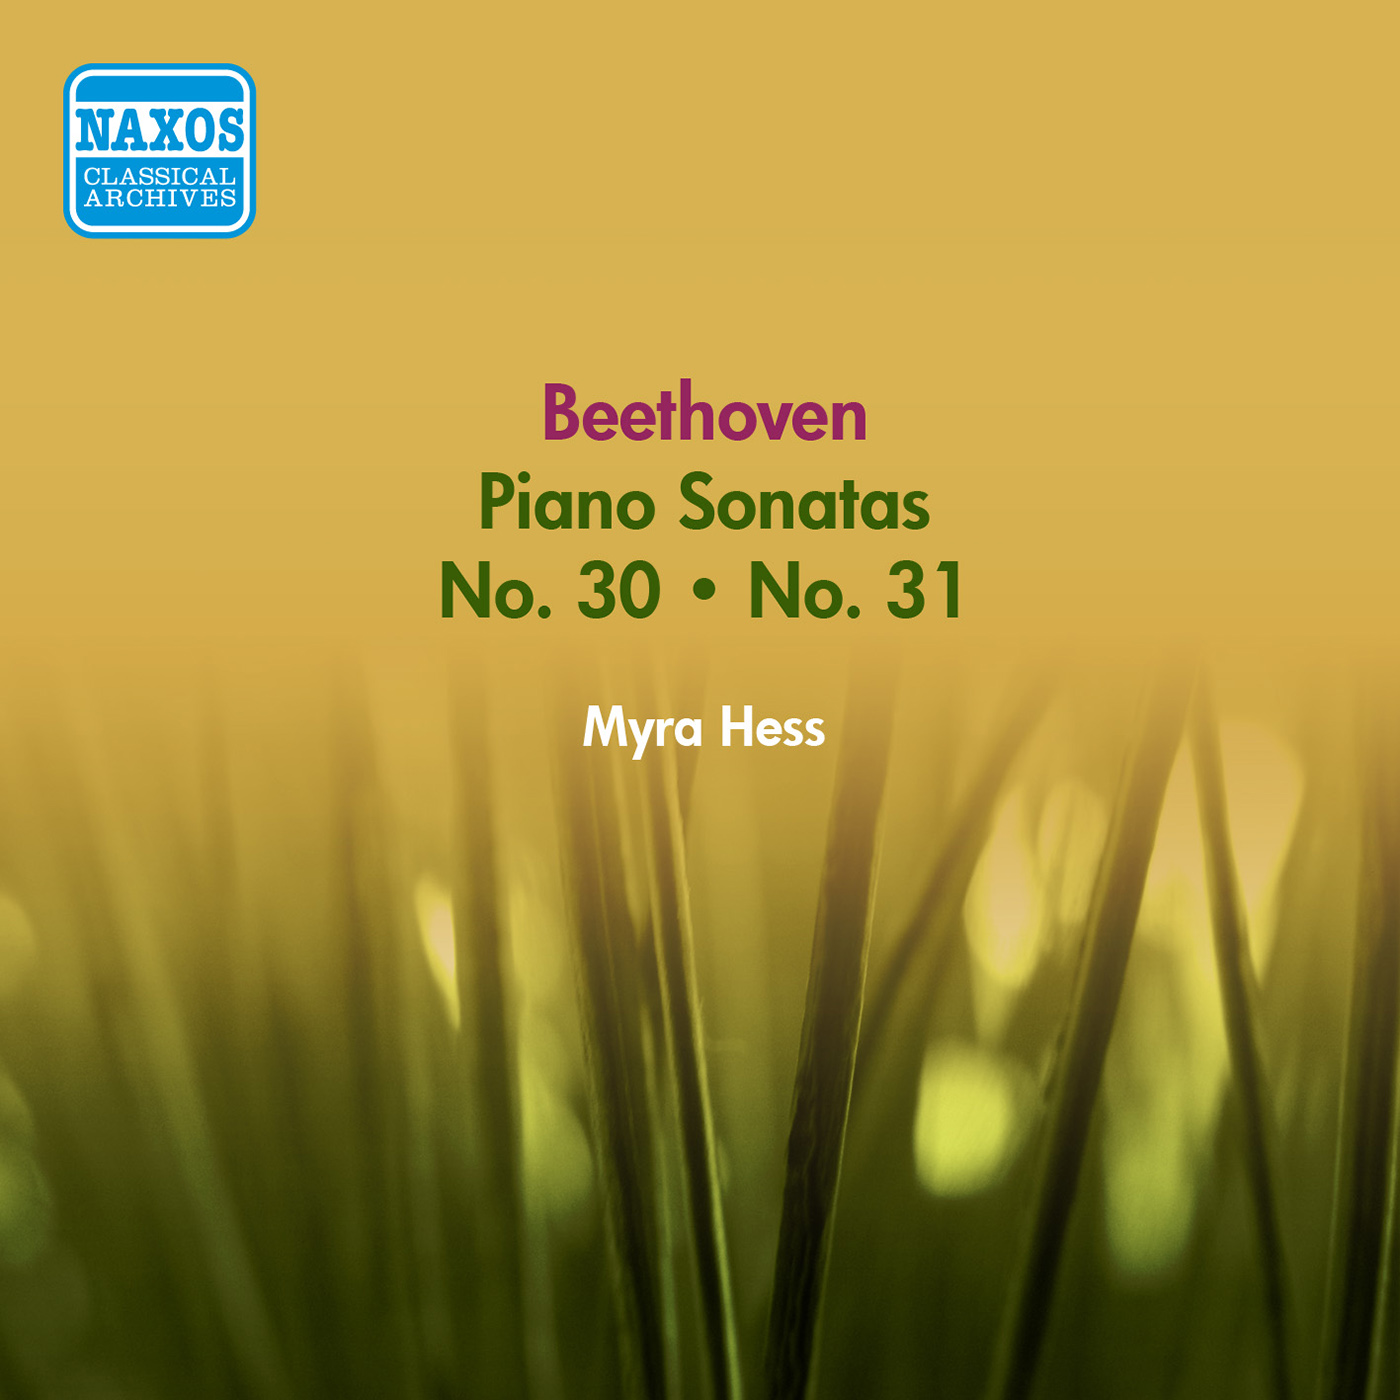 Piano Sonata No. 30 in E Major, Op. 109: III. Andante molto cantabile ed espressivo